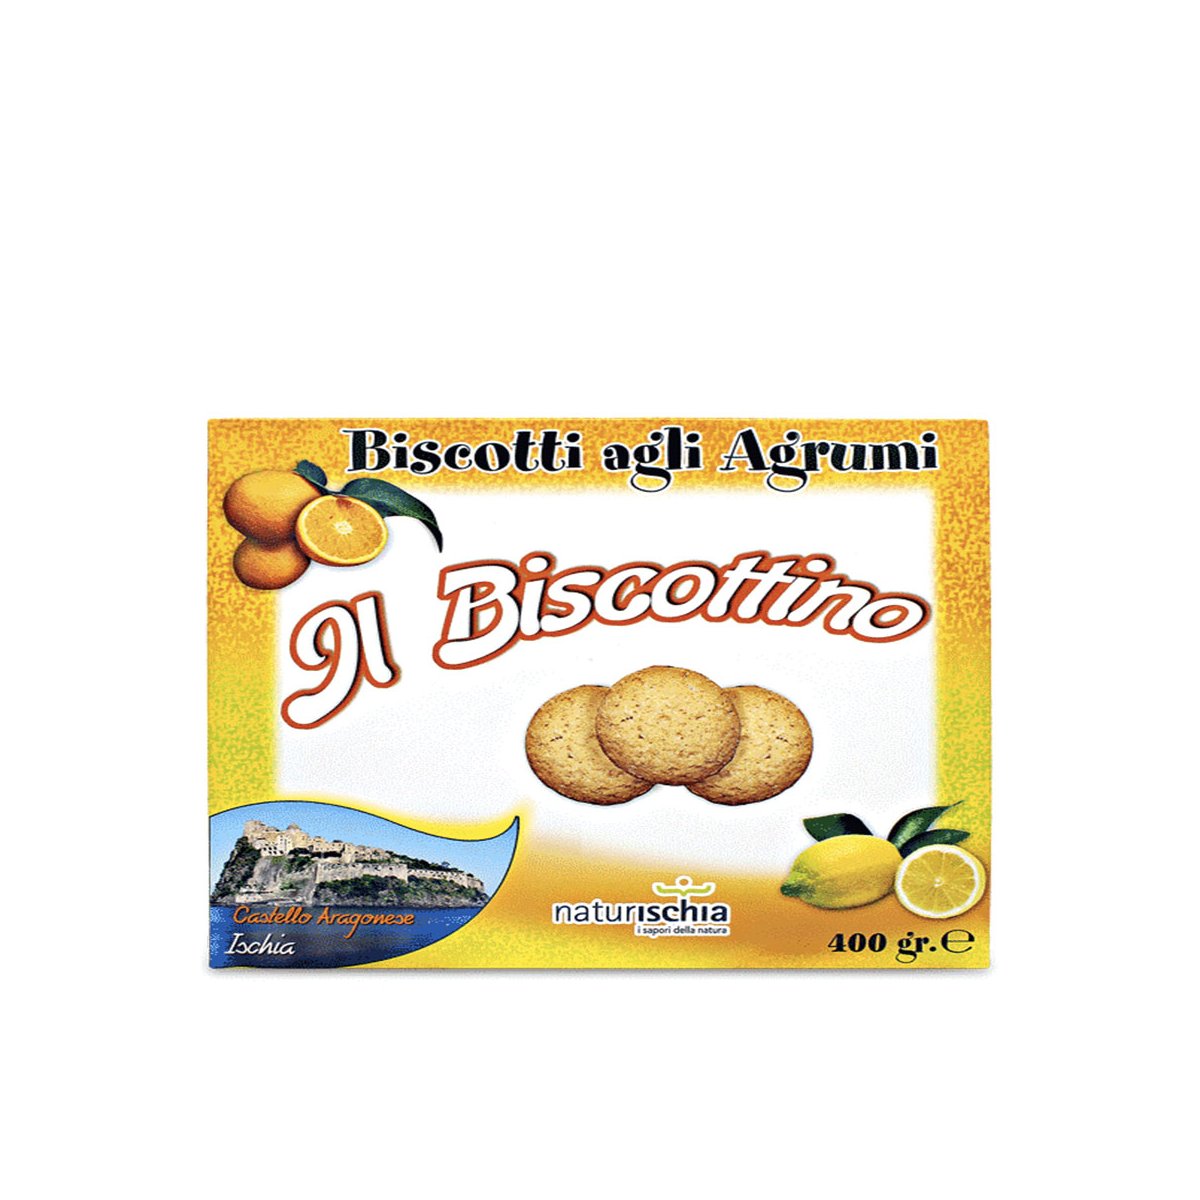 Biscotti agli agrumi "Il Biscottino" 400 gr